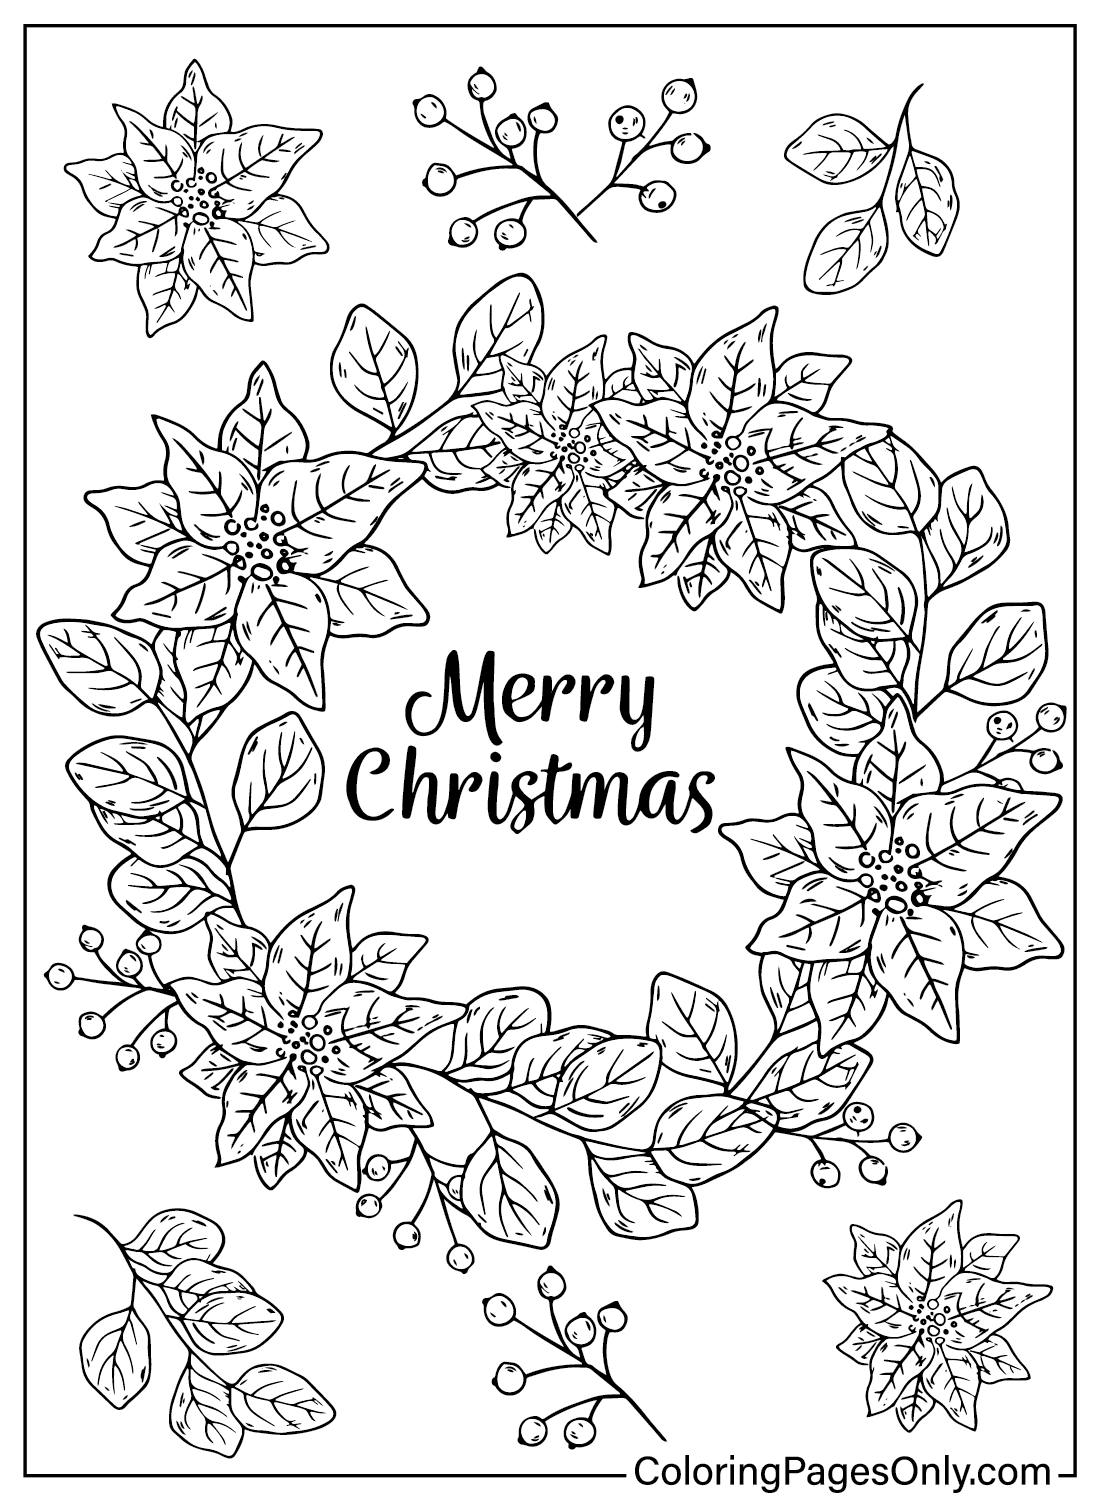 Раскраска Рождественский венок, которую можно распечатать из Рождественского венка